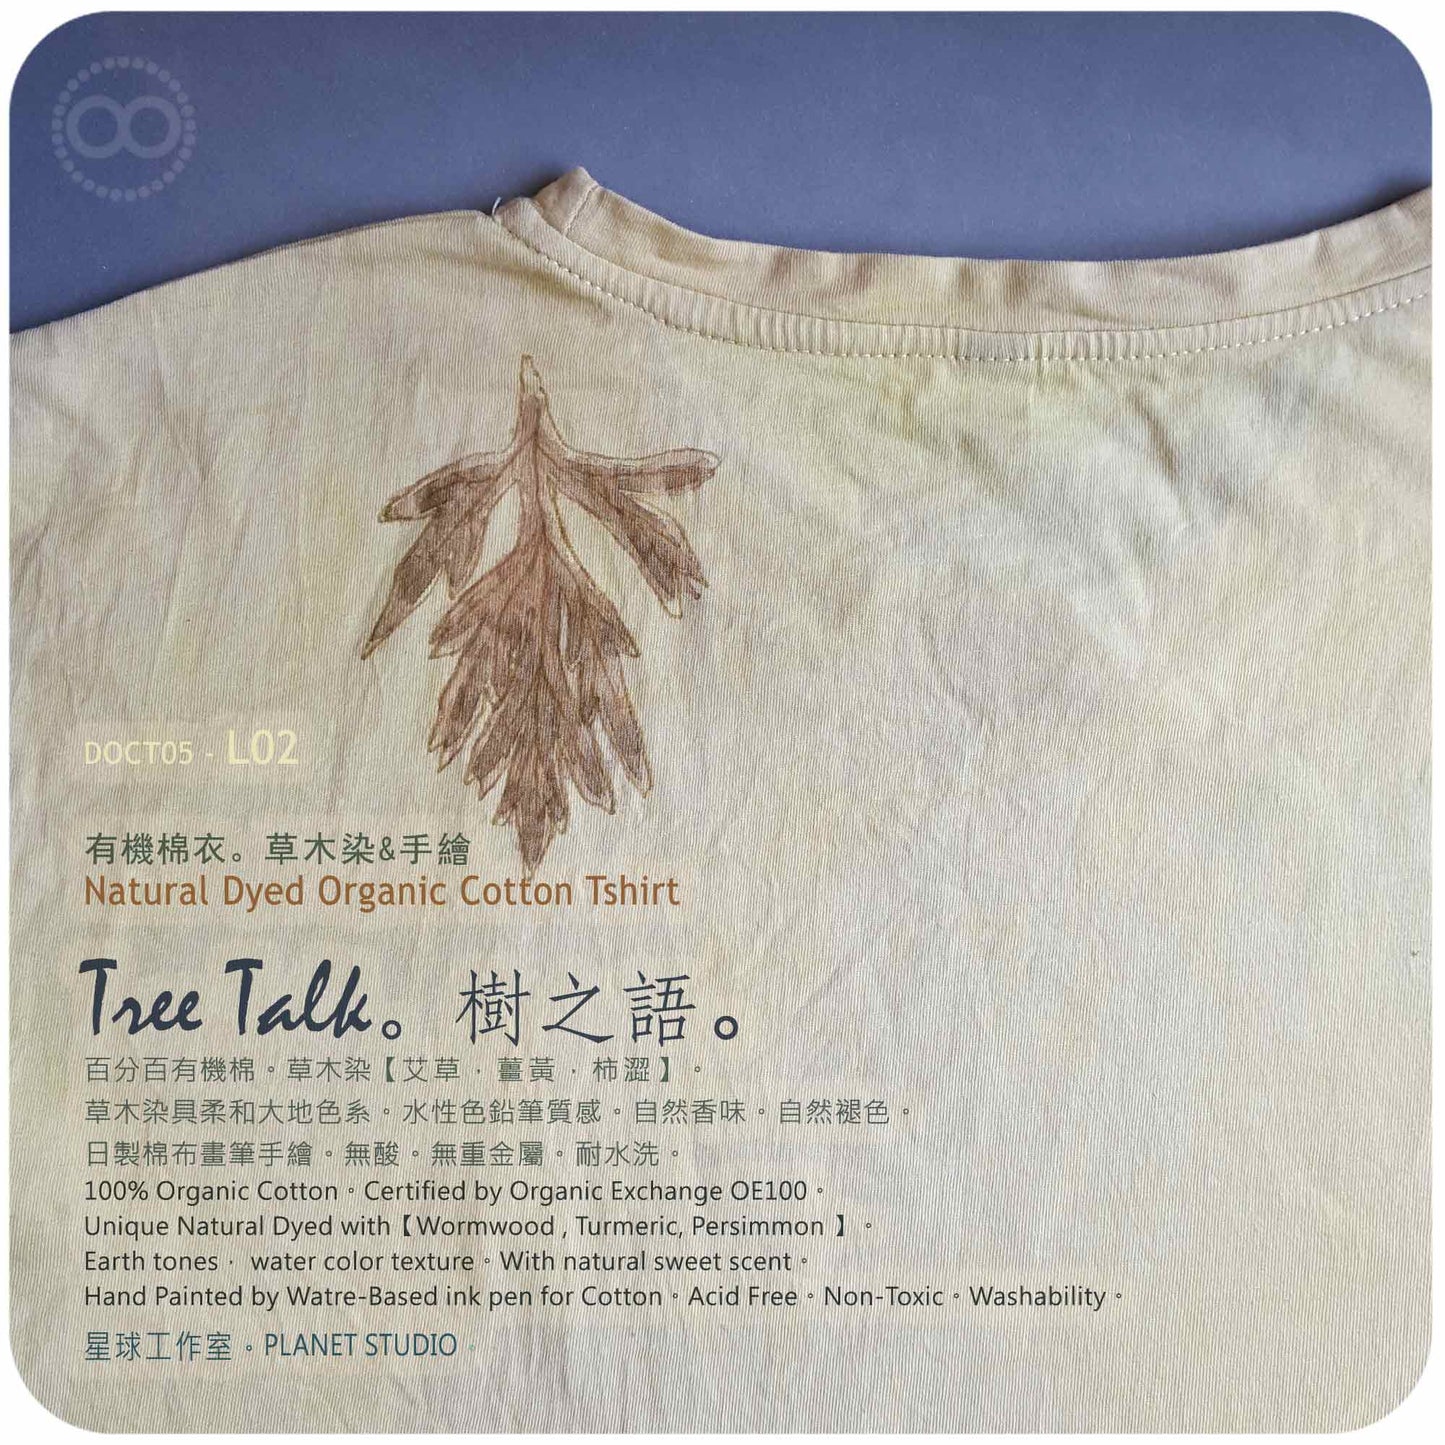 草木手染繪 ∞ 有機棉衣 Organic Cotton T :: Tree Talk ● L02 肩寬 49 cm